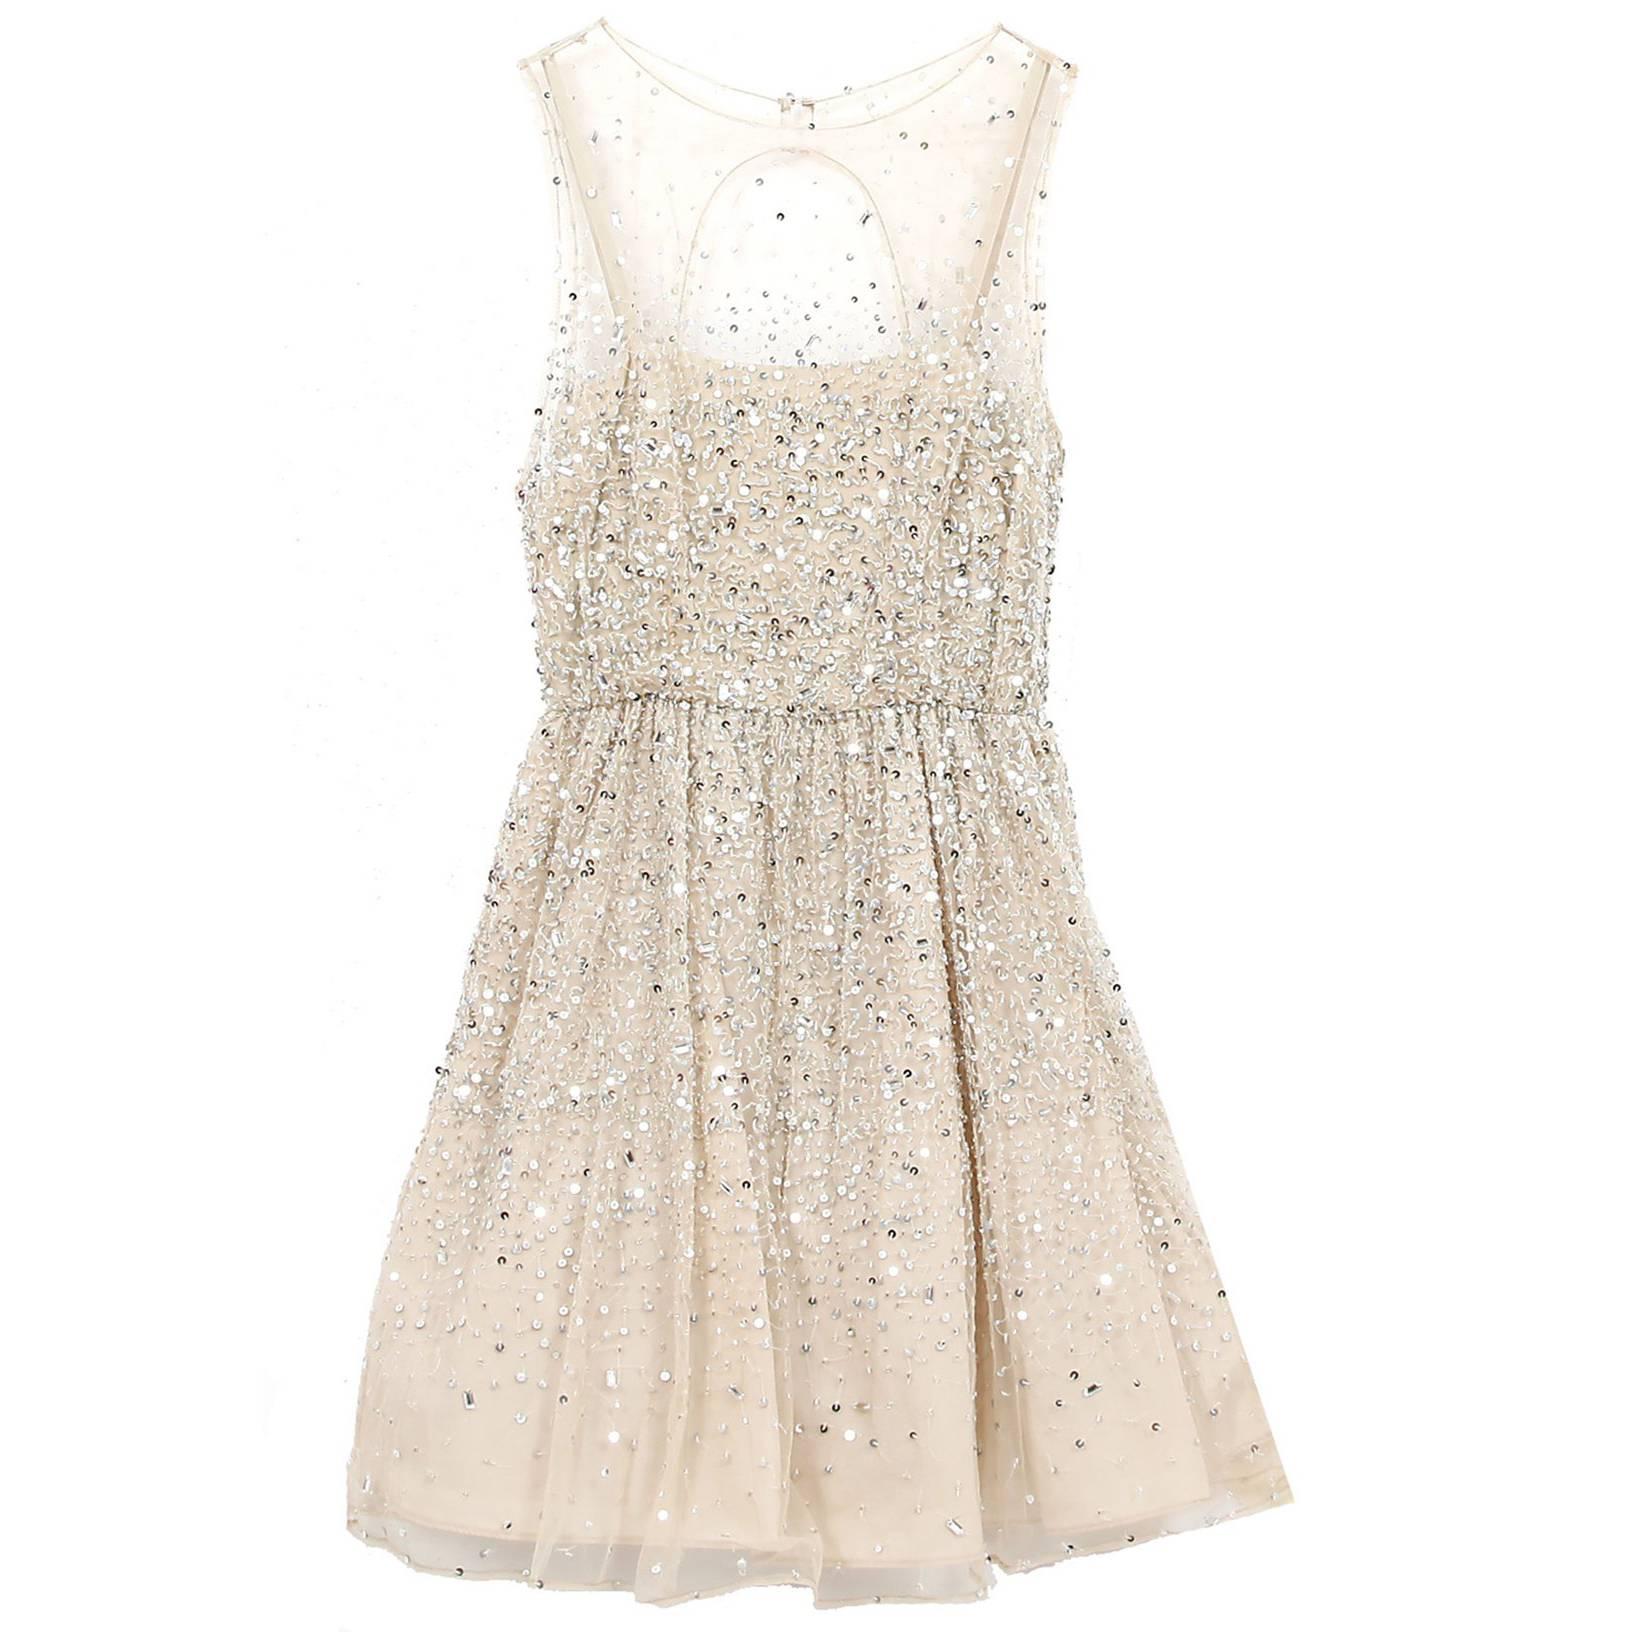 Alice + Olivia Nude & Silver Sequin Dress Sz